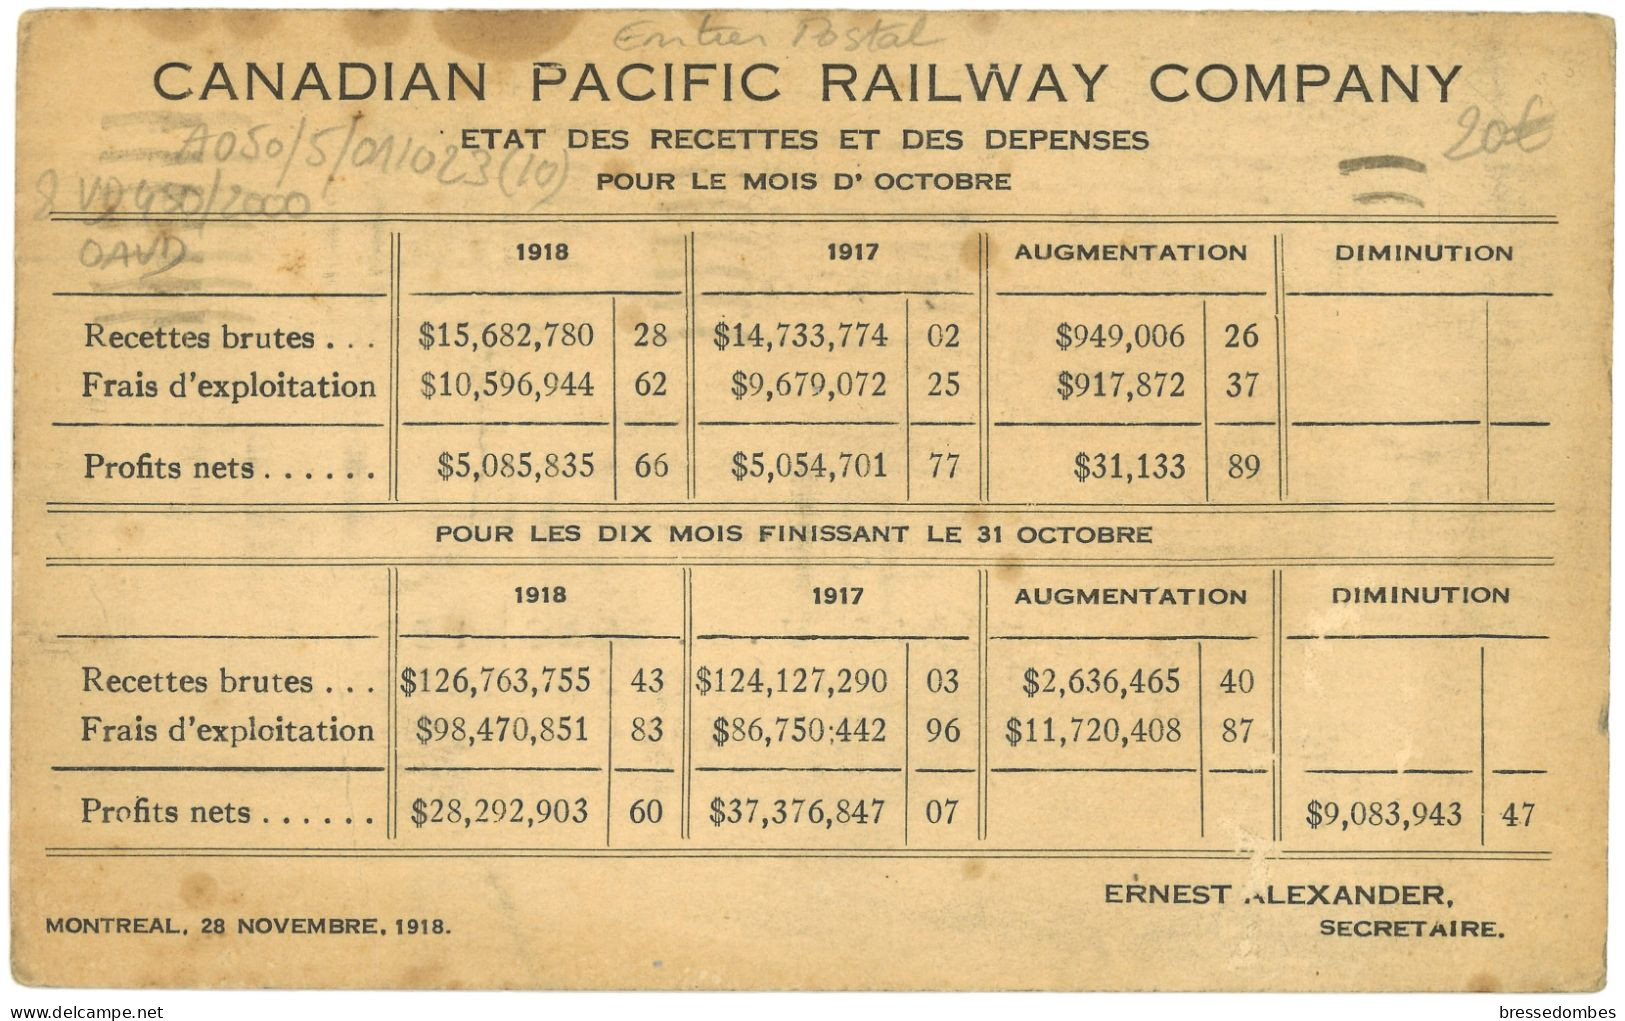 Canada - Montréal - Chateau Lake Louise B. C. - Canadian Pacific Railway Company - Entier Postal 1 Cent Vert - 1903-1954 Könige